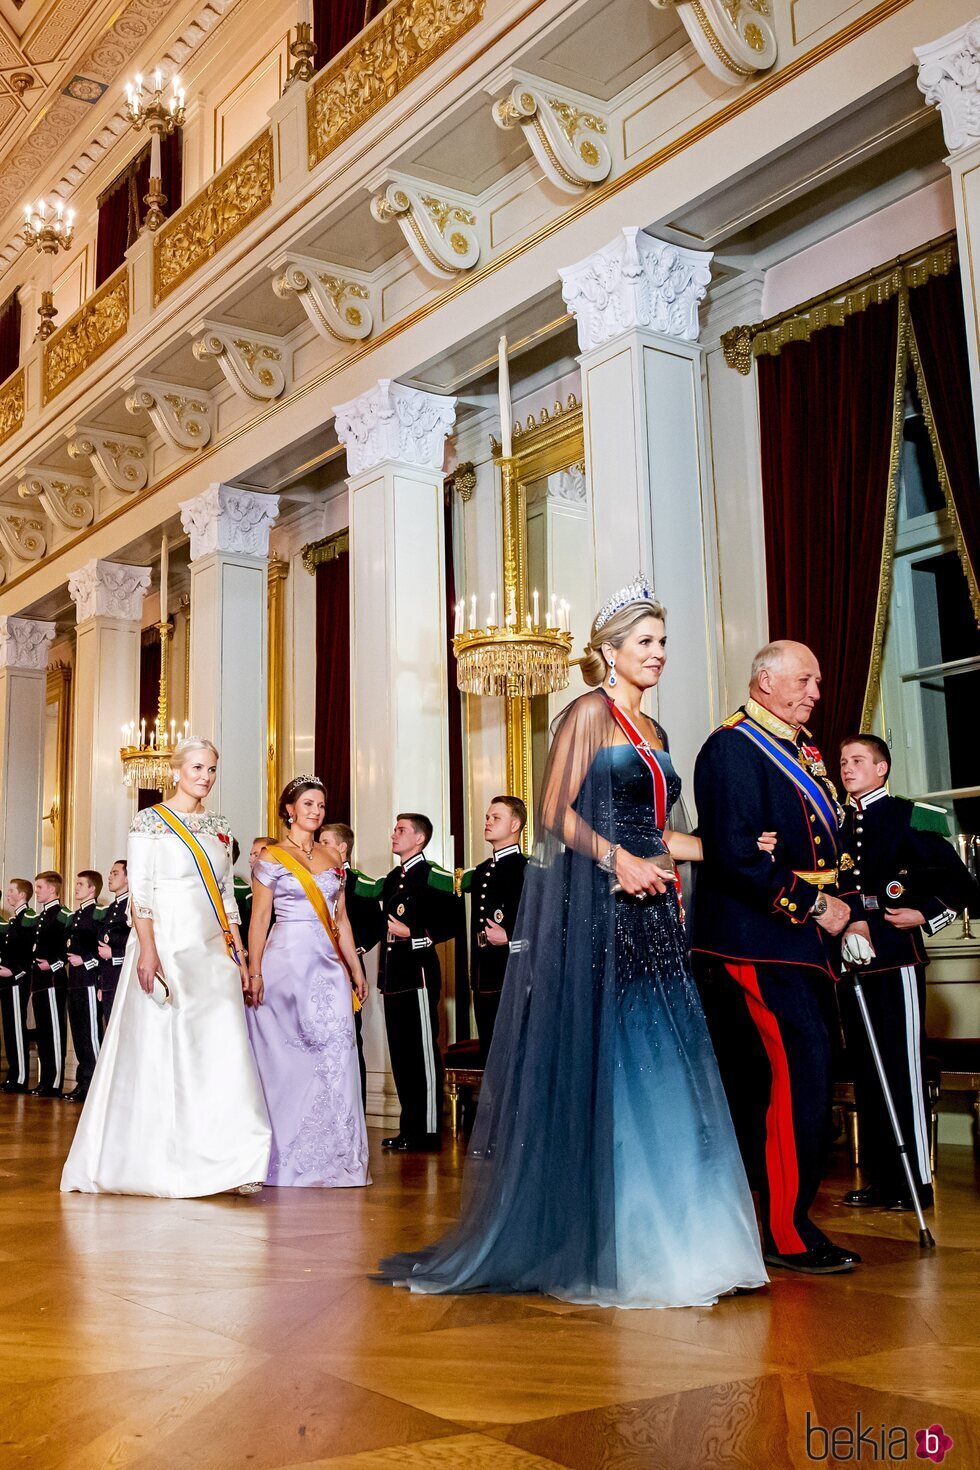 Harald de Noruega, Máxima de Holanda, Mette-Marit de Noruega y Marta Luisa de Noruega en la cena de gala por la Visita de Estado de los Reyes de Holanda a